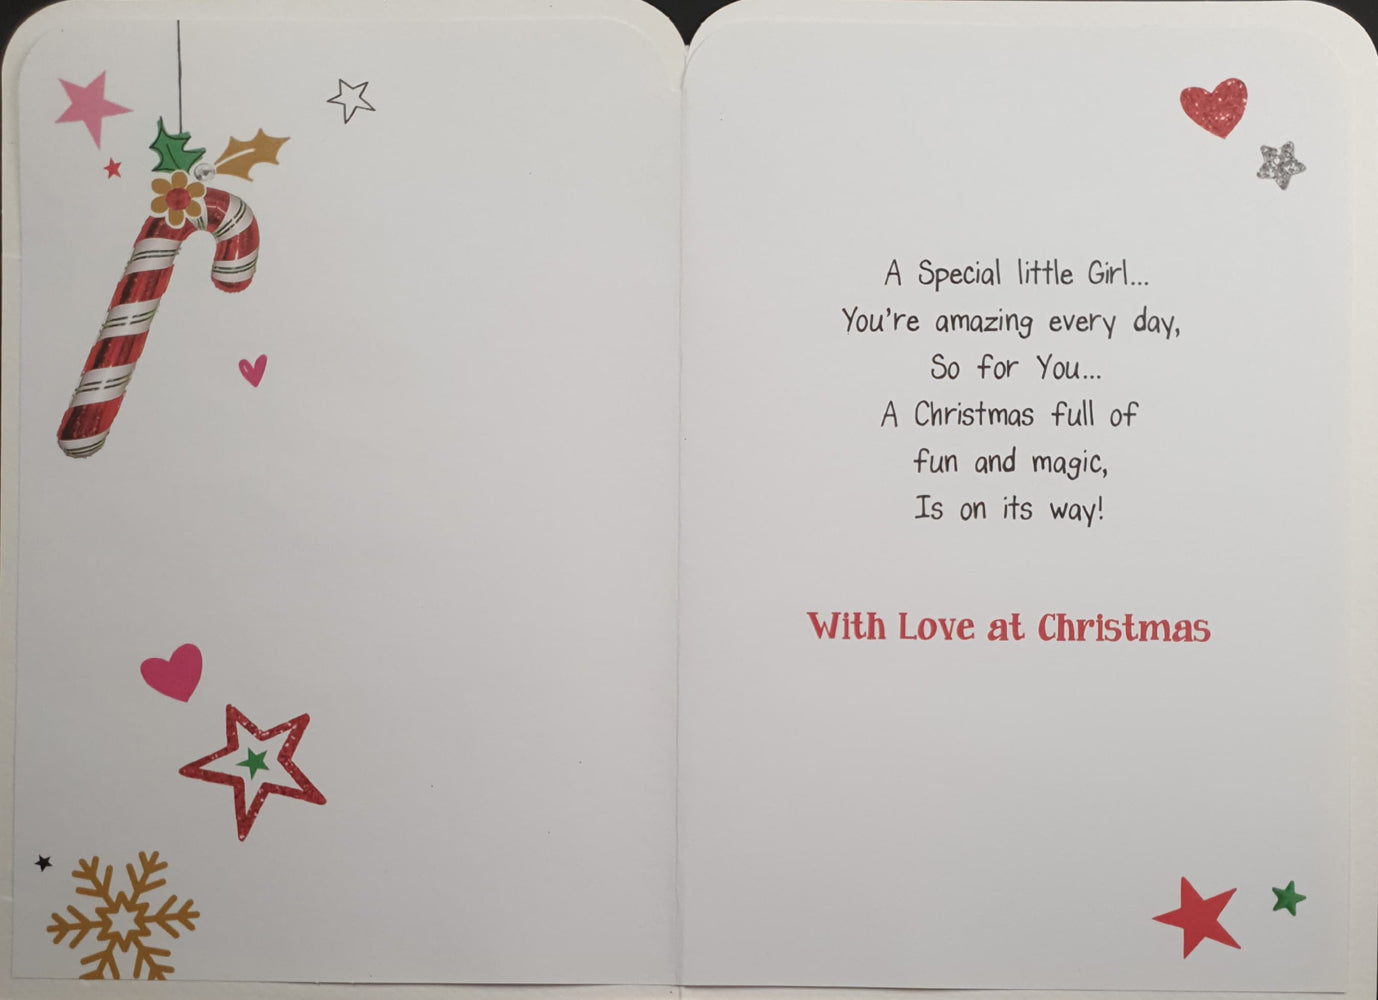 Special Girl Christmas Card - Little Girl & Stars